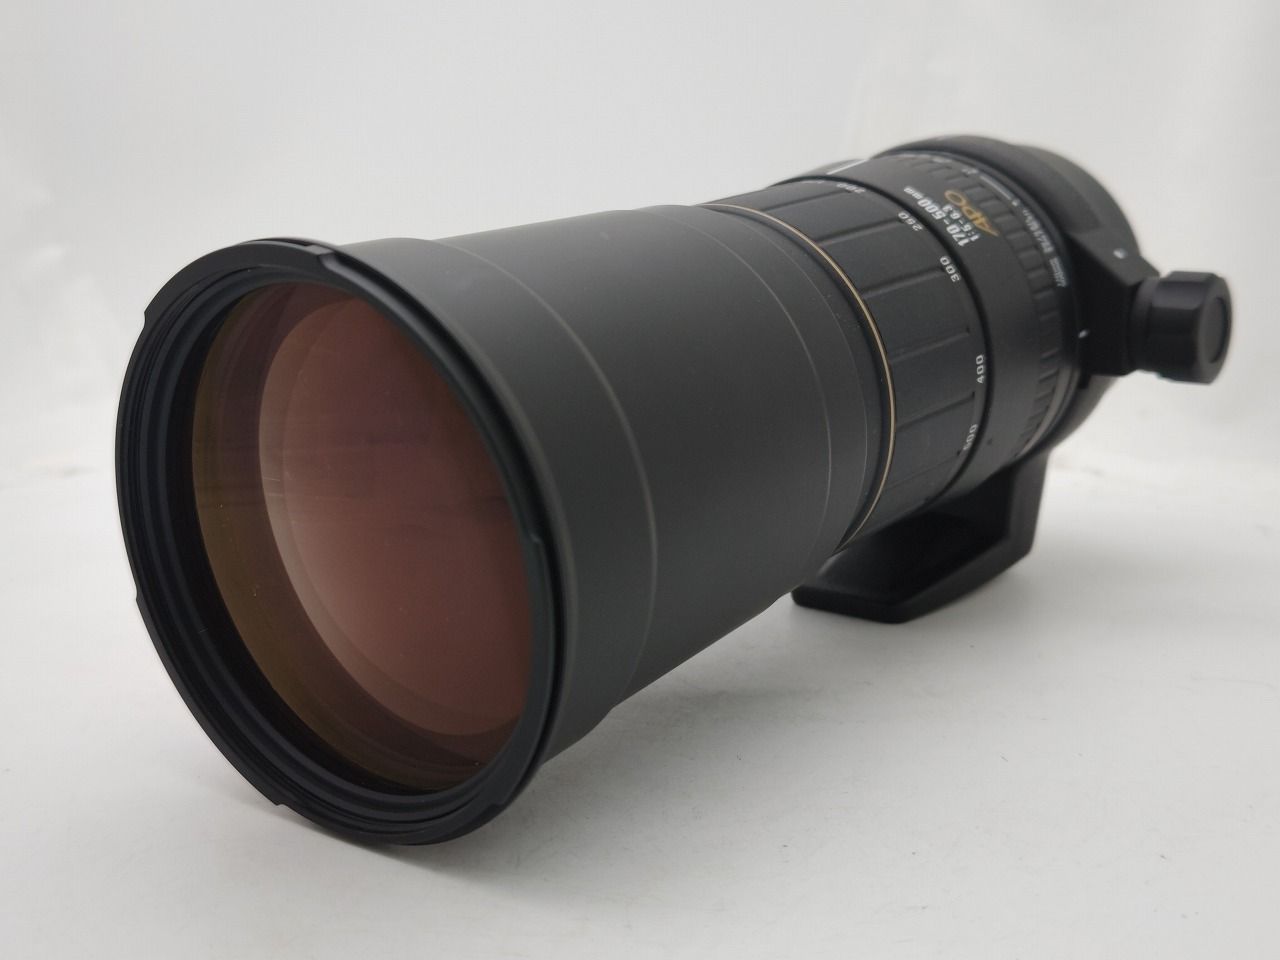 SIGMA 170-500 APO ズー厶レンズ キャノンEFマウント - レンズ(ズーム)